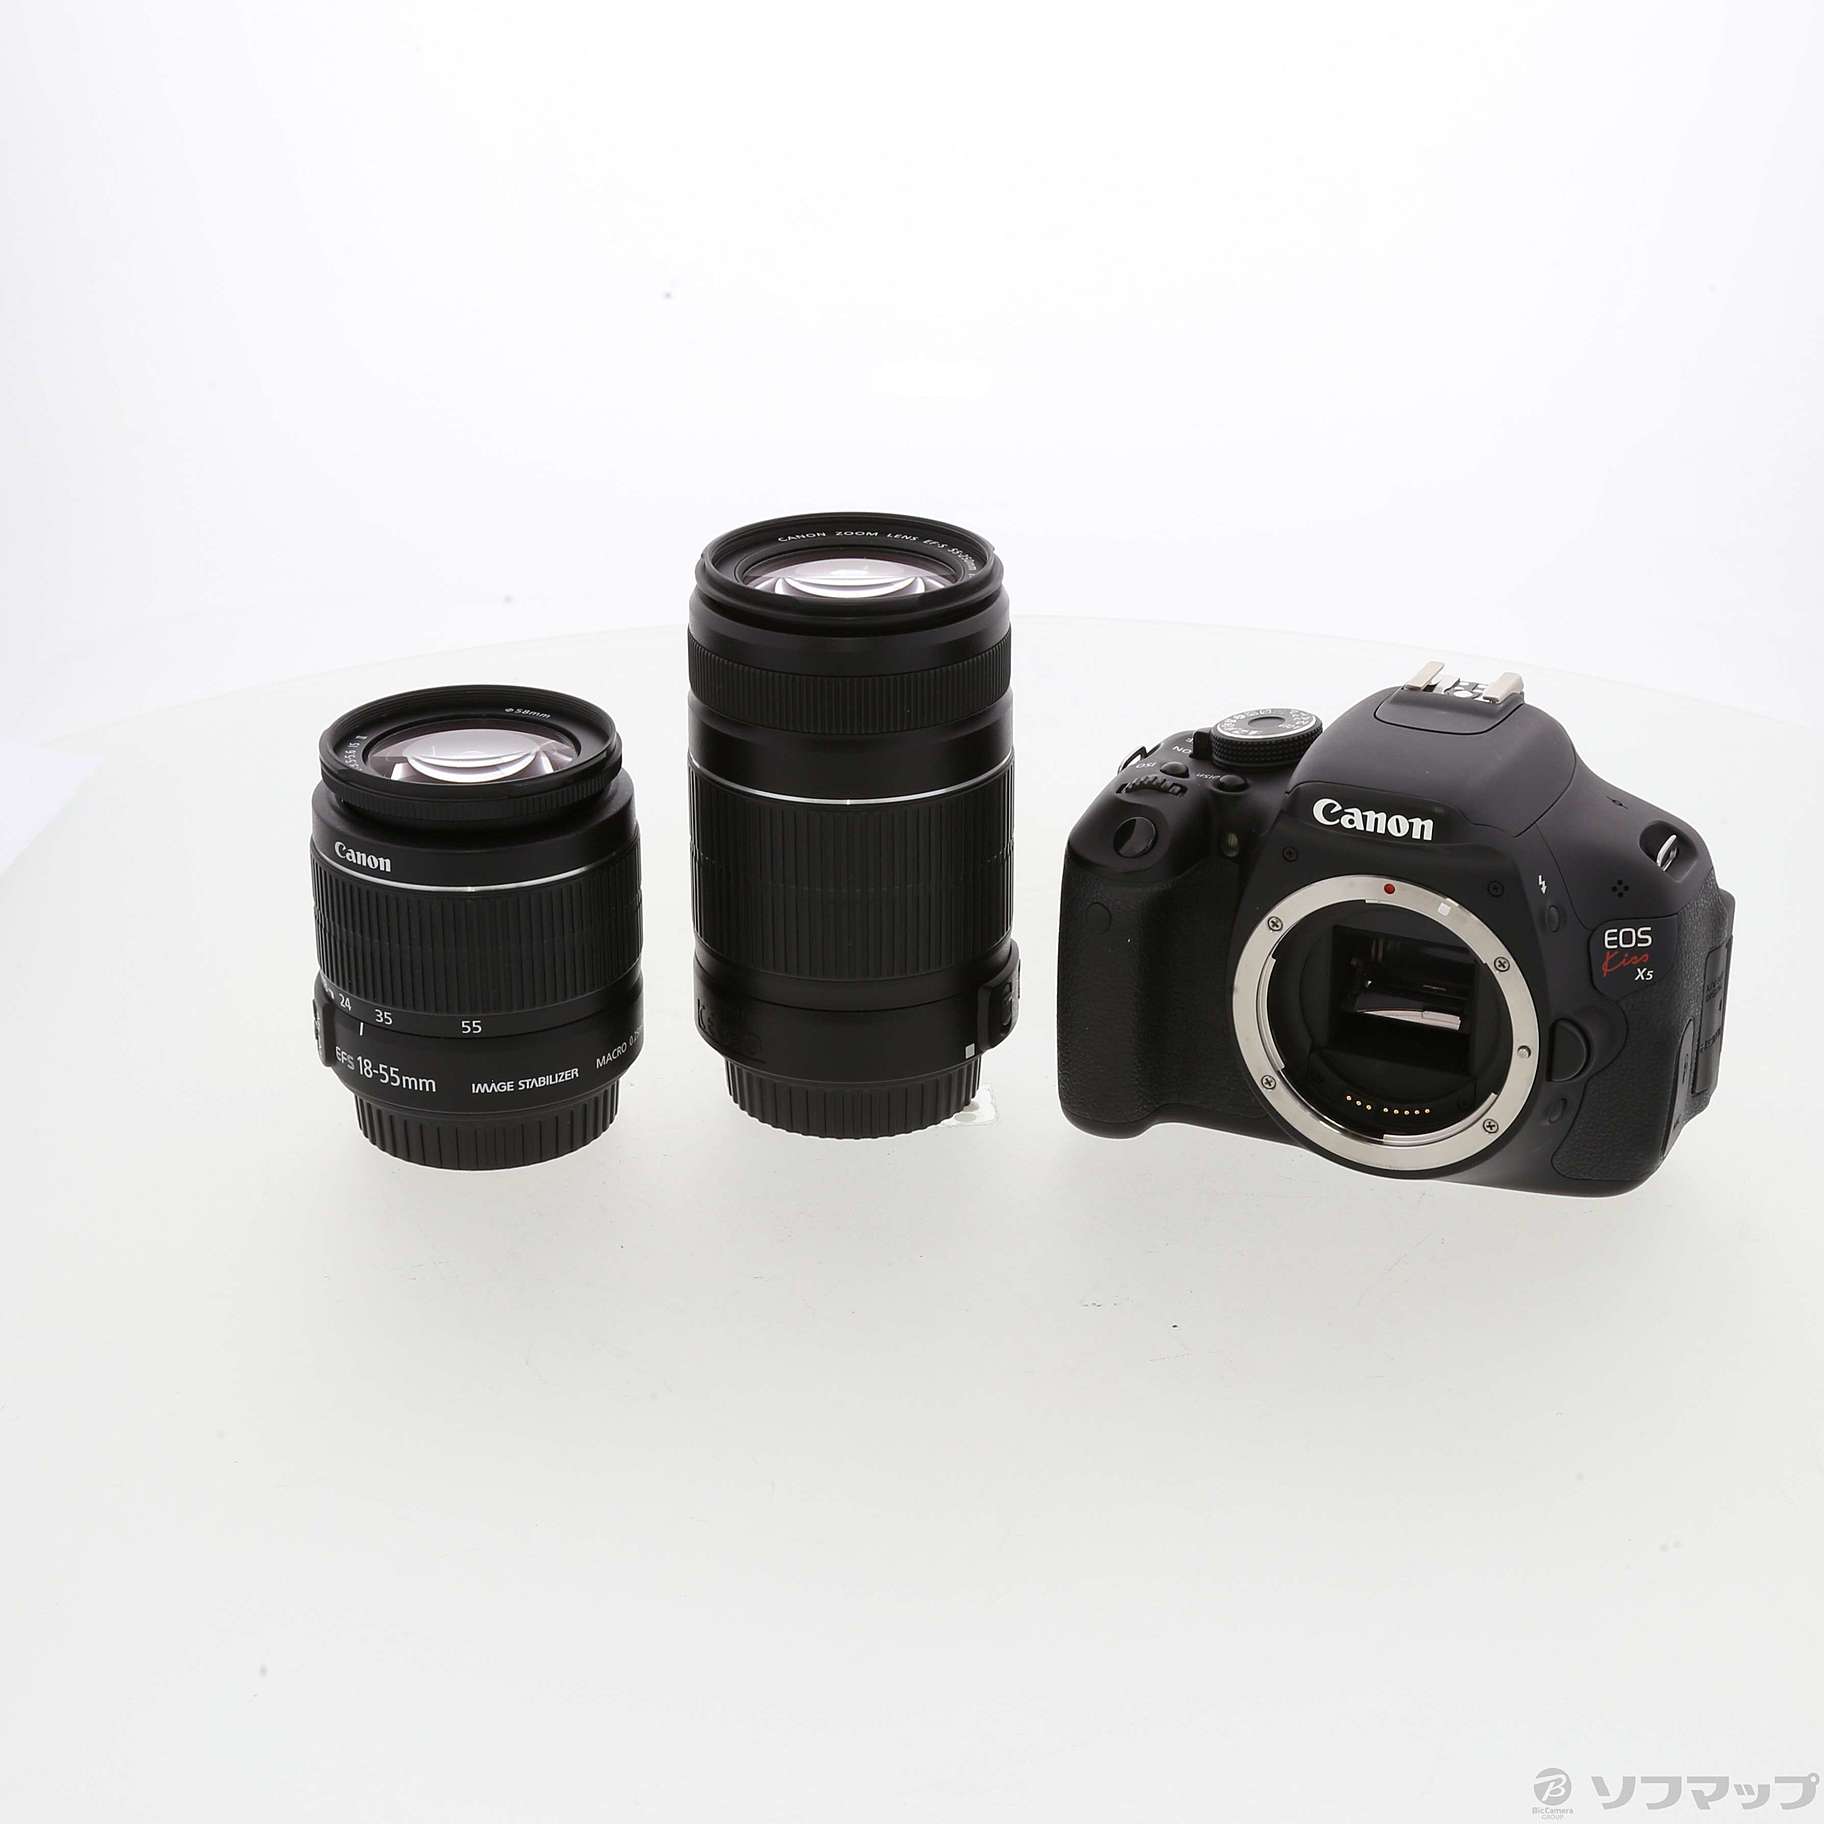 Canon EOS kiss x5 Wズームキット即購入可です - デジタルカメラ